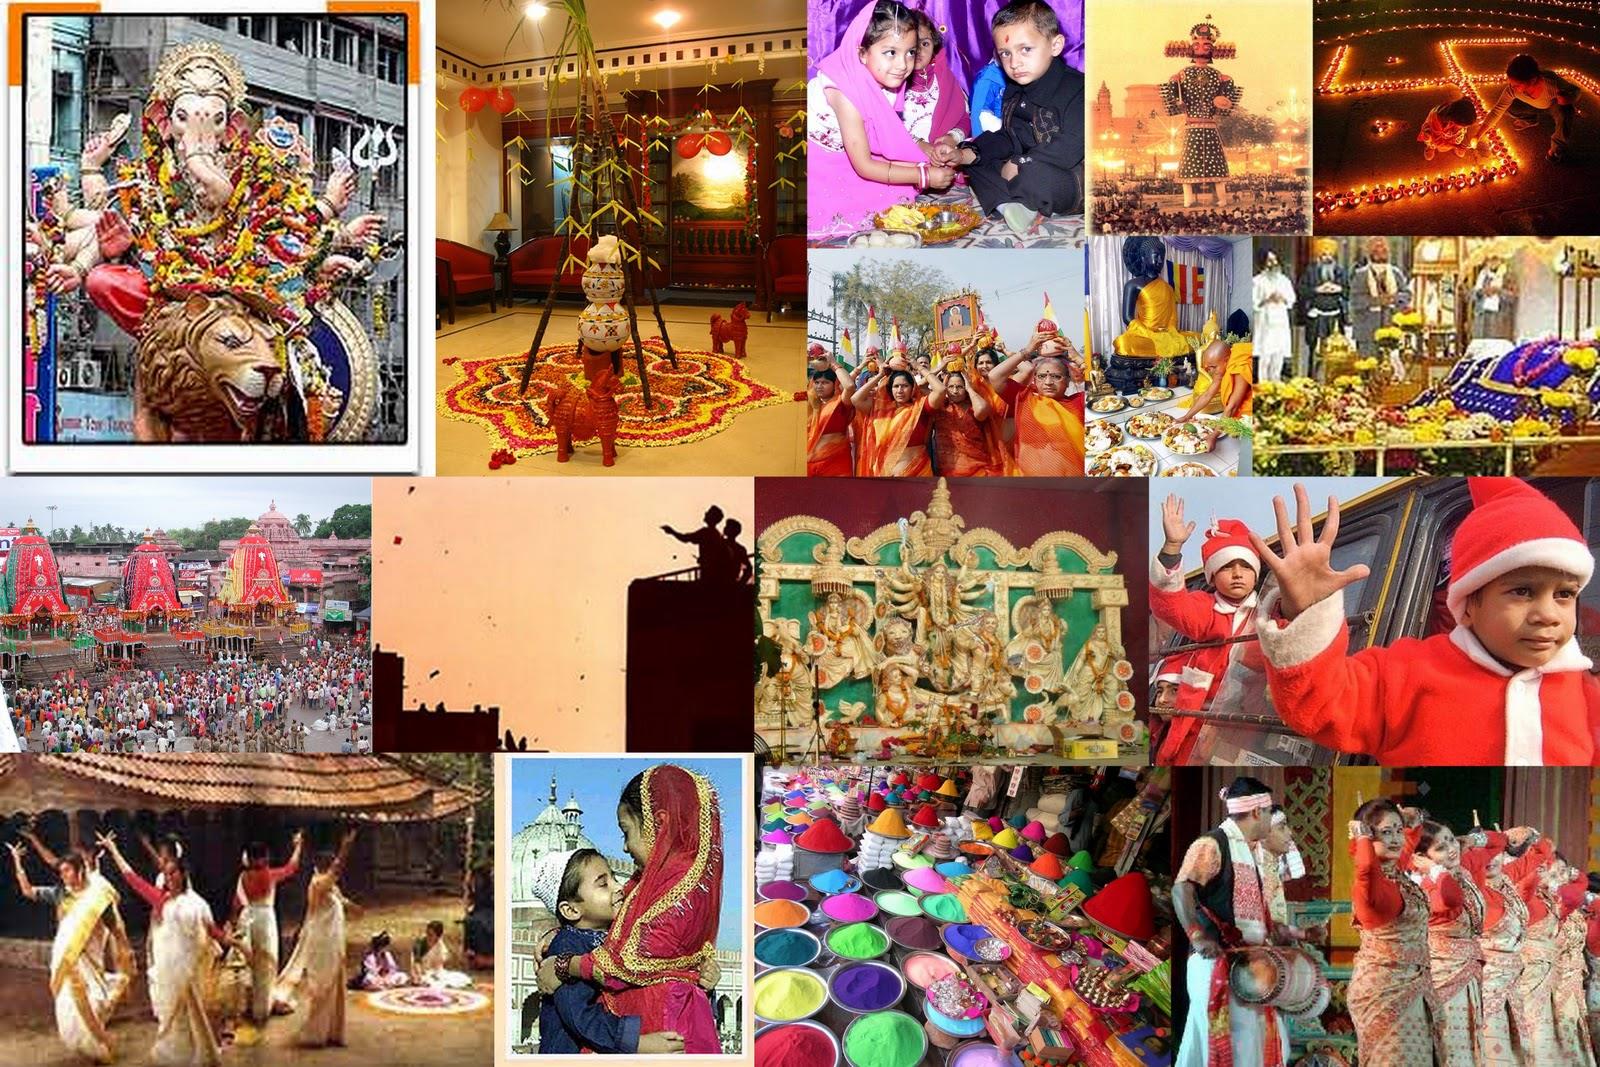 सांस्कृति धरोहर - भारत में हर धर्म के पर्व और त्योहार को मनाया जाता है। यहां की पोशाक वेश-भूषा समेत तमाम चीजें लोगों को अपनी ओर खींचती हैं। शायद यही वजह है कि सारी दुनिया में भारत की संस्कृति अपनी अलग पहचान रखती है। 